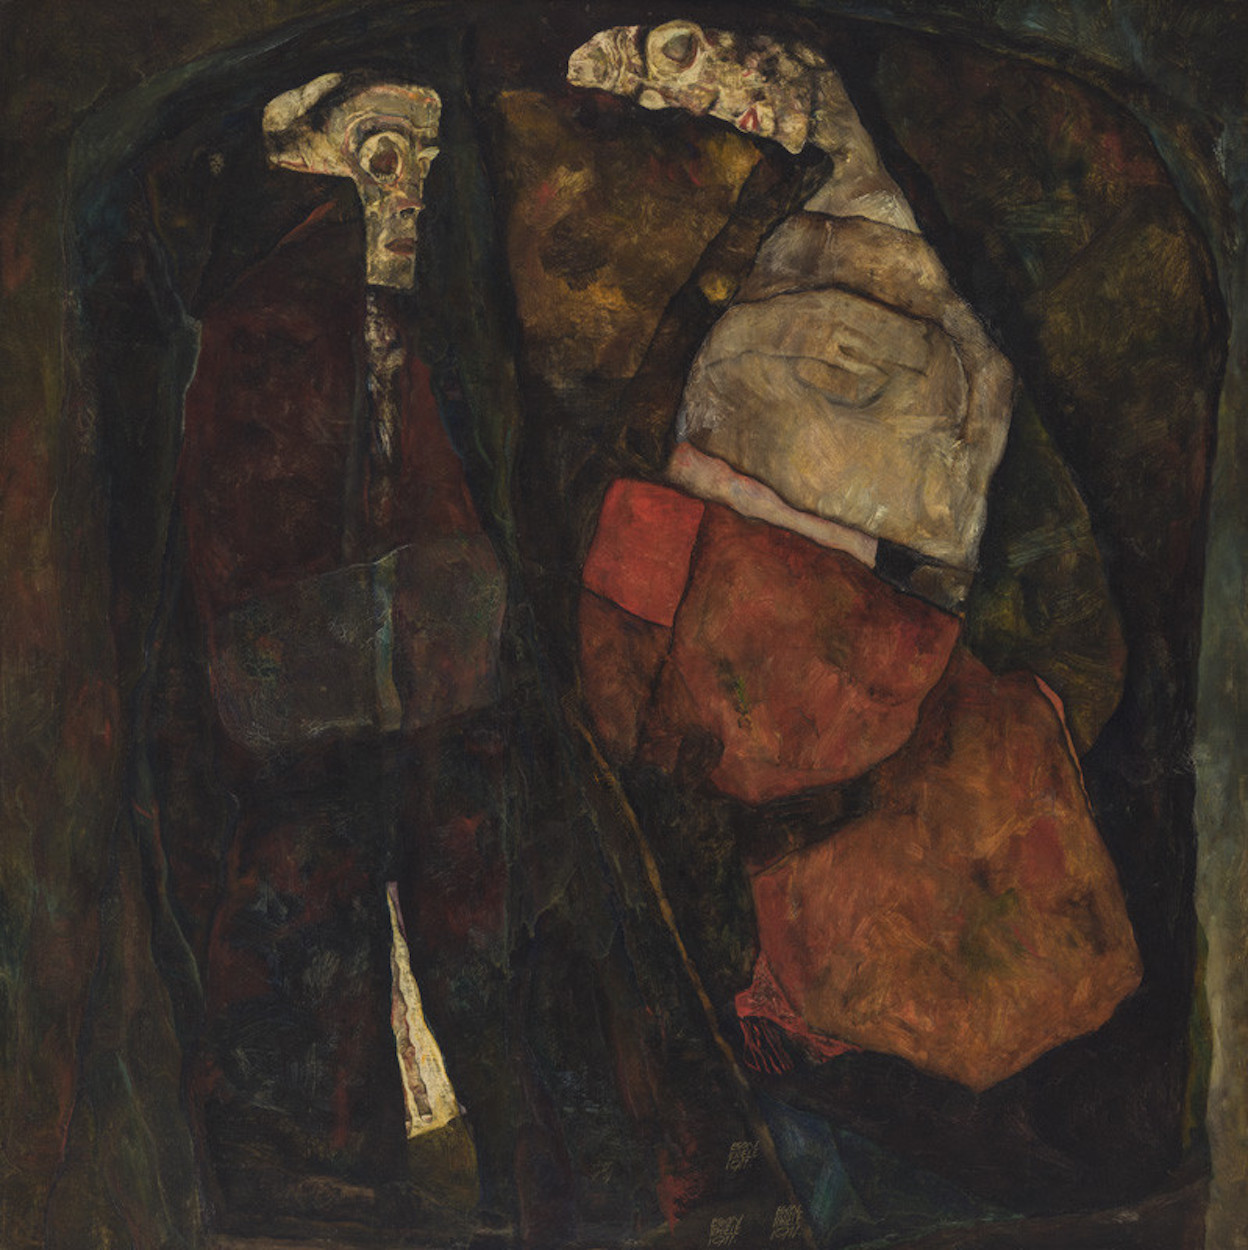 Terhes nő és Halál (Anya és Halál) by Egon Schiele - 1911 - 100 x 100 cm 